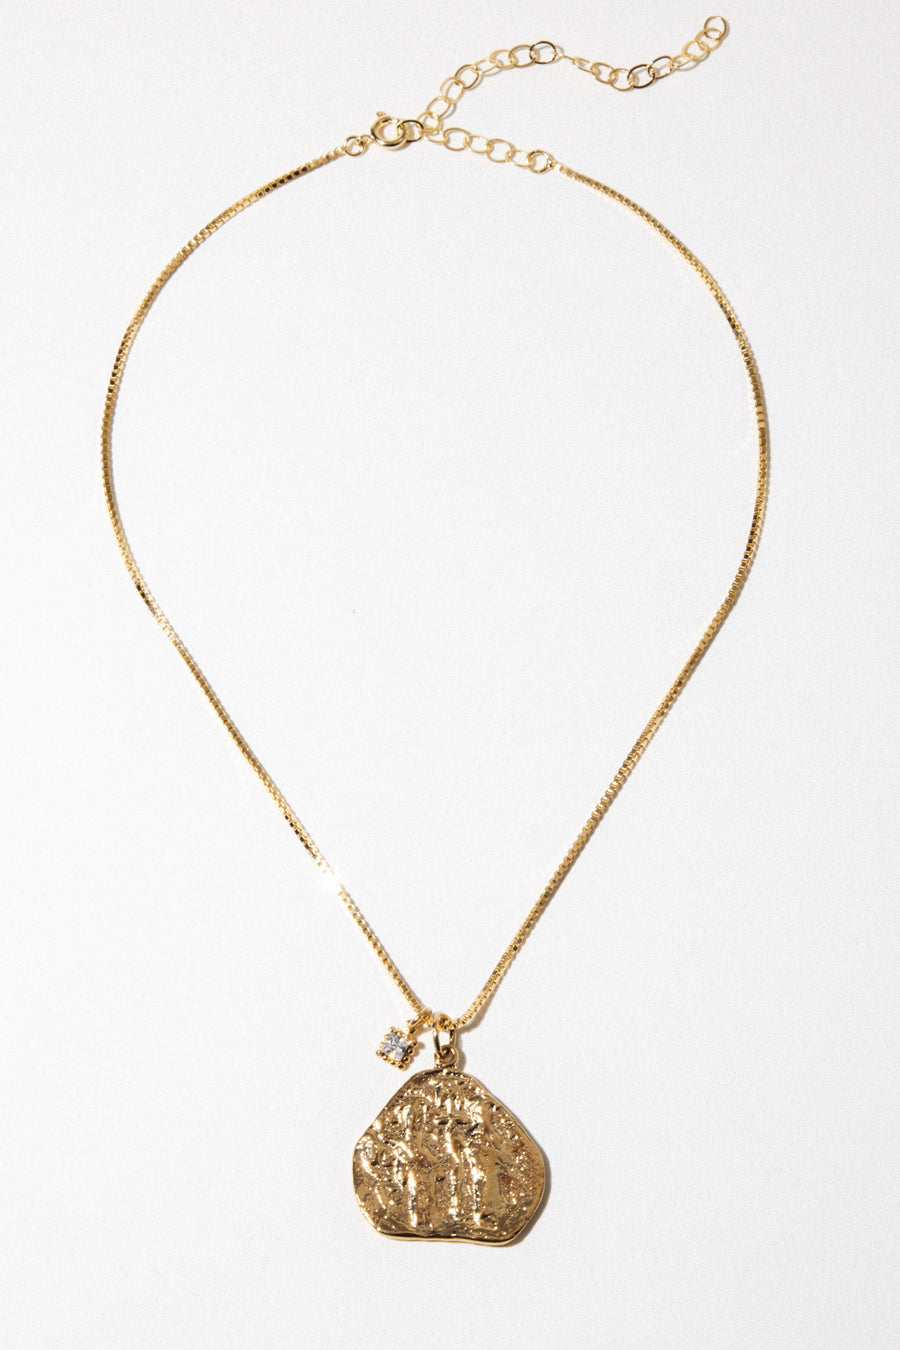 Dona Italia Jewelry Gold / 14 Inches Uffizi Pendant Necklace